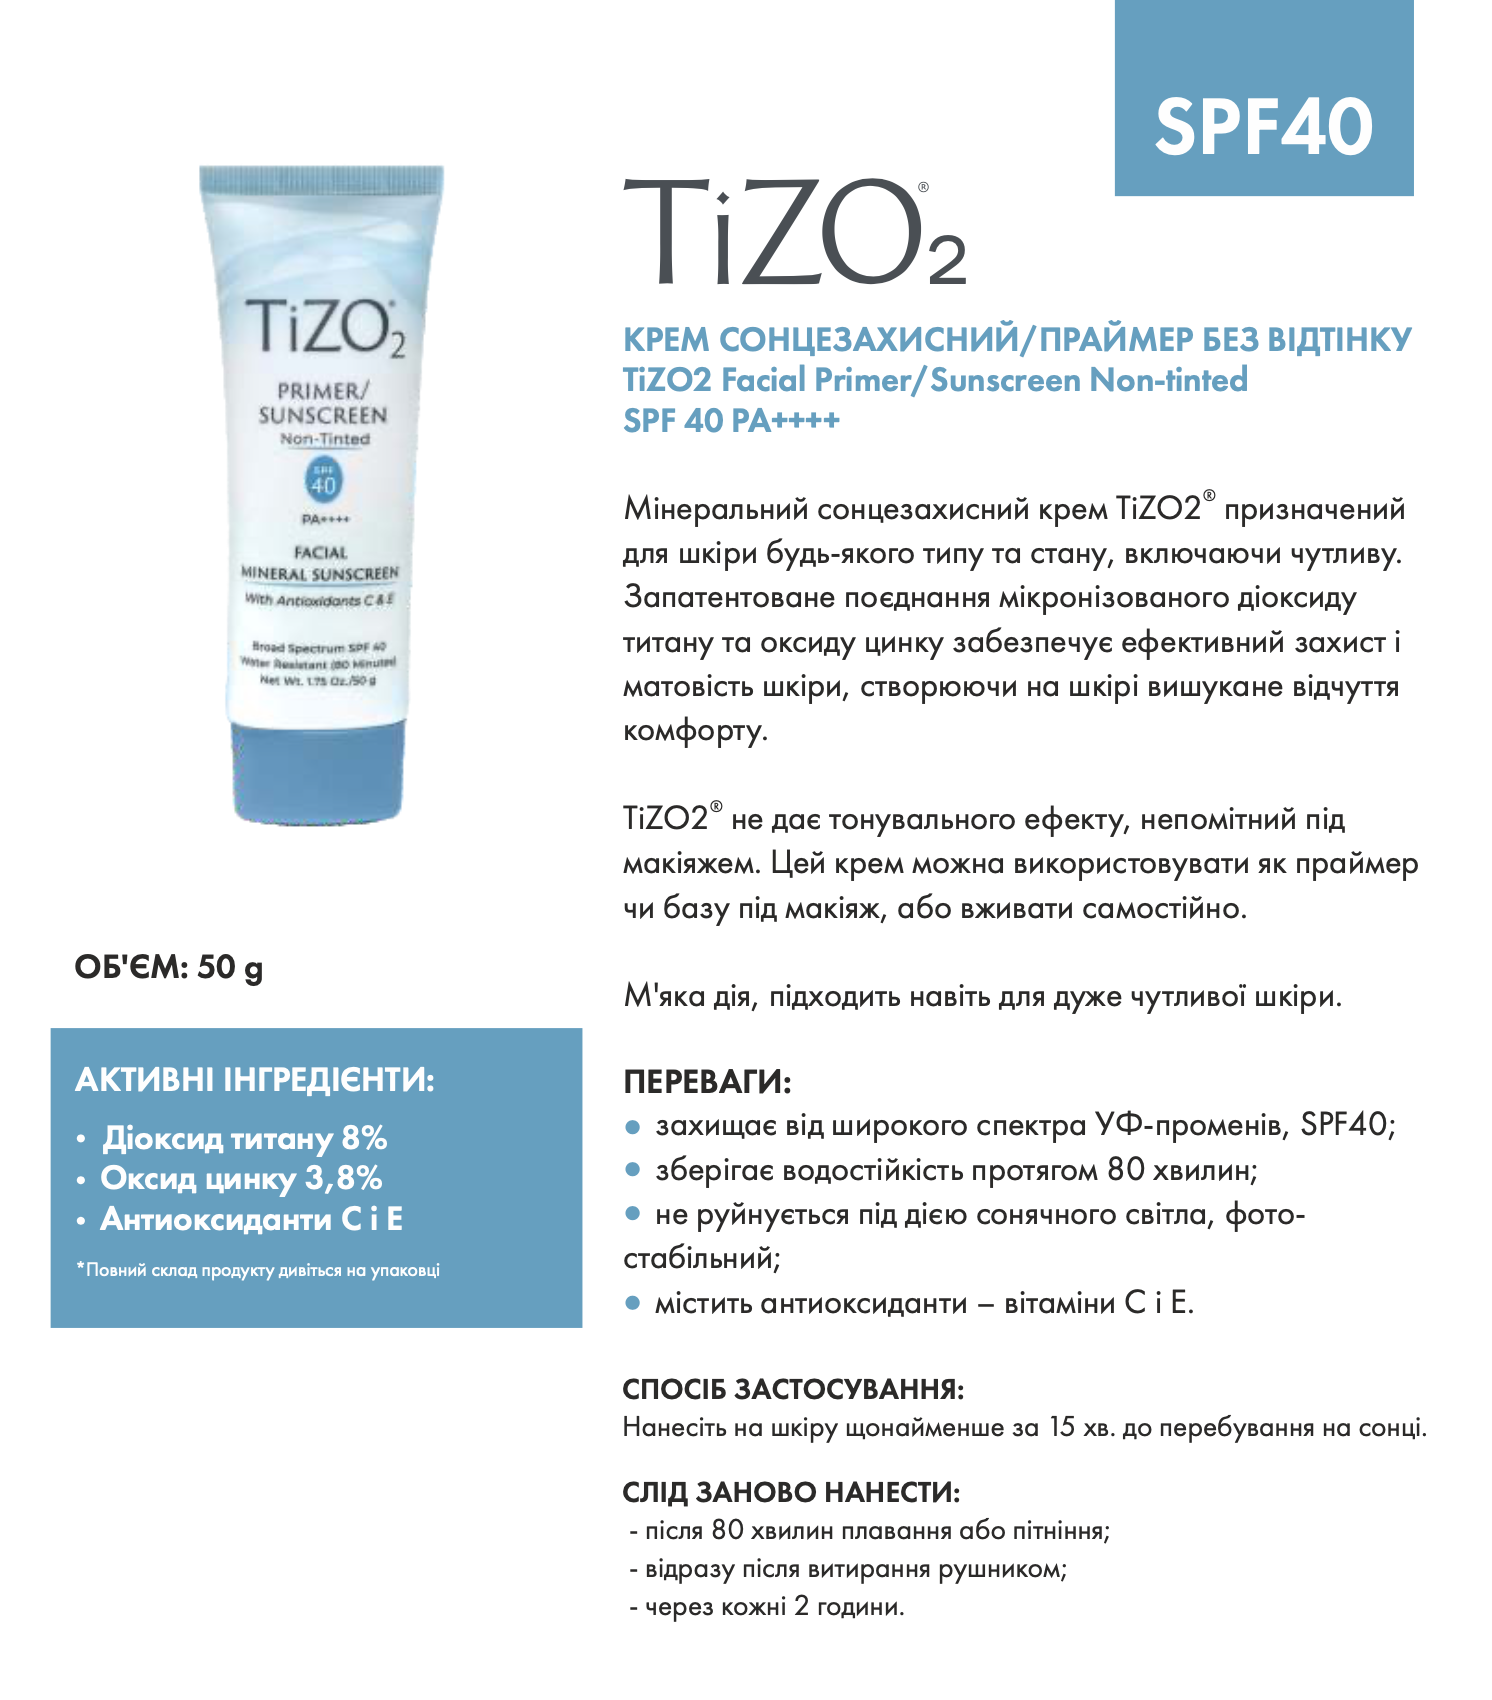 tizo2-facial-primersunscreen-non-tinted-spf-40-pa